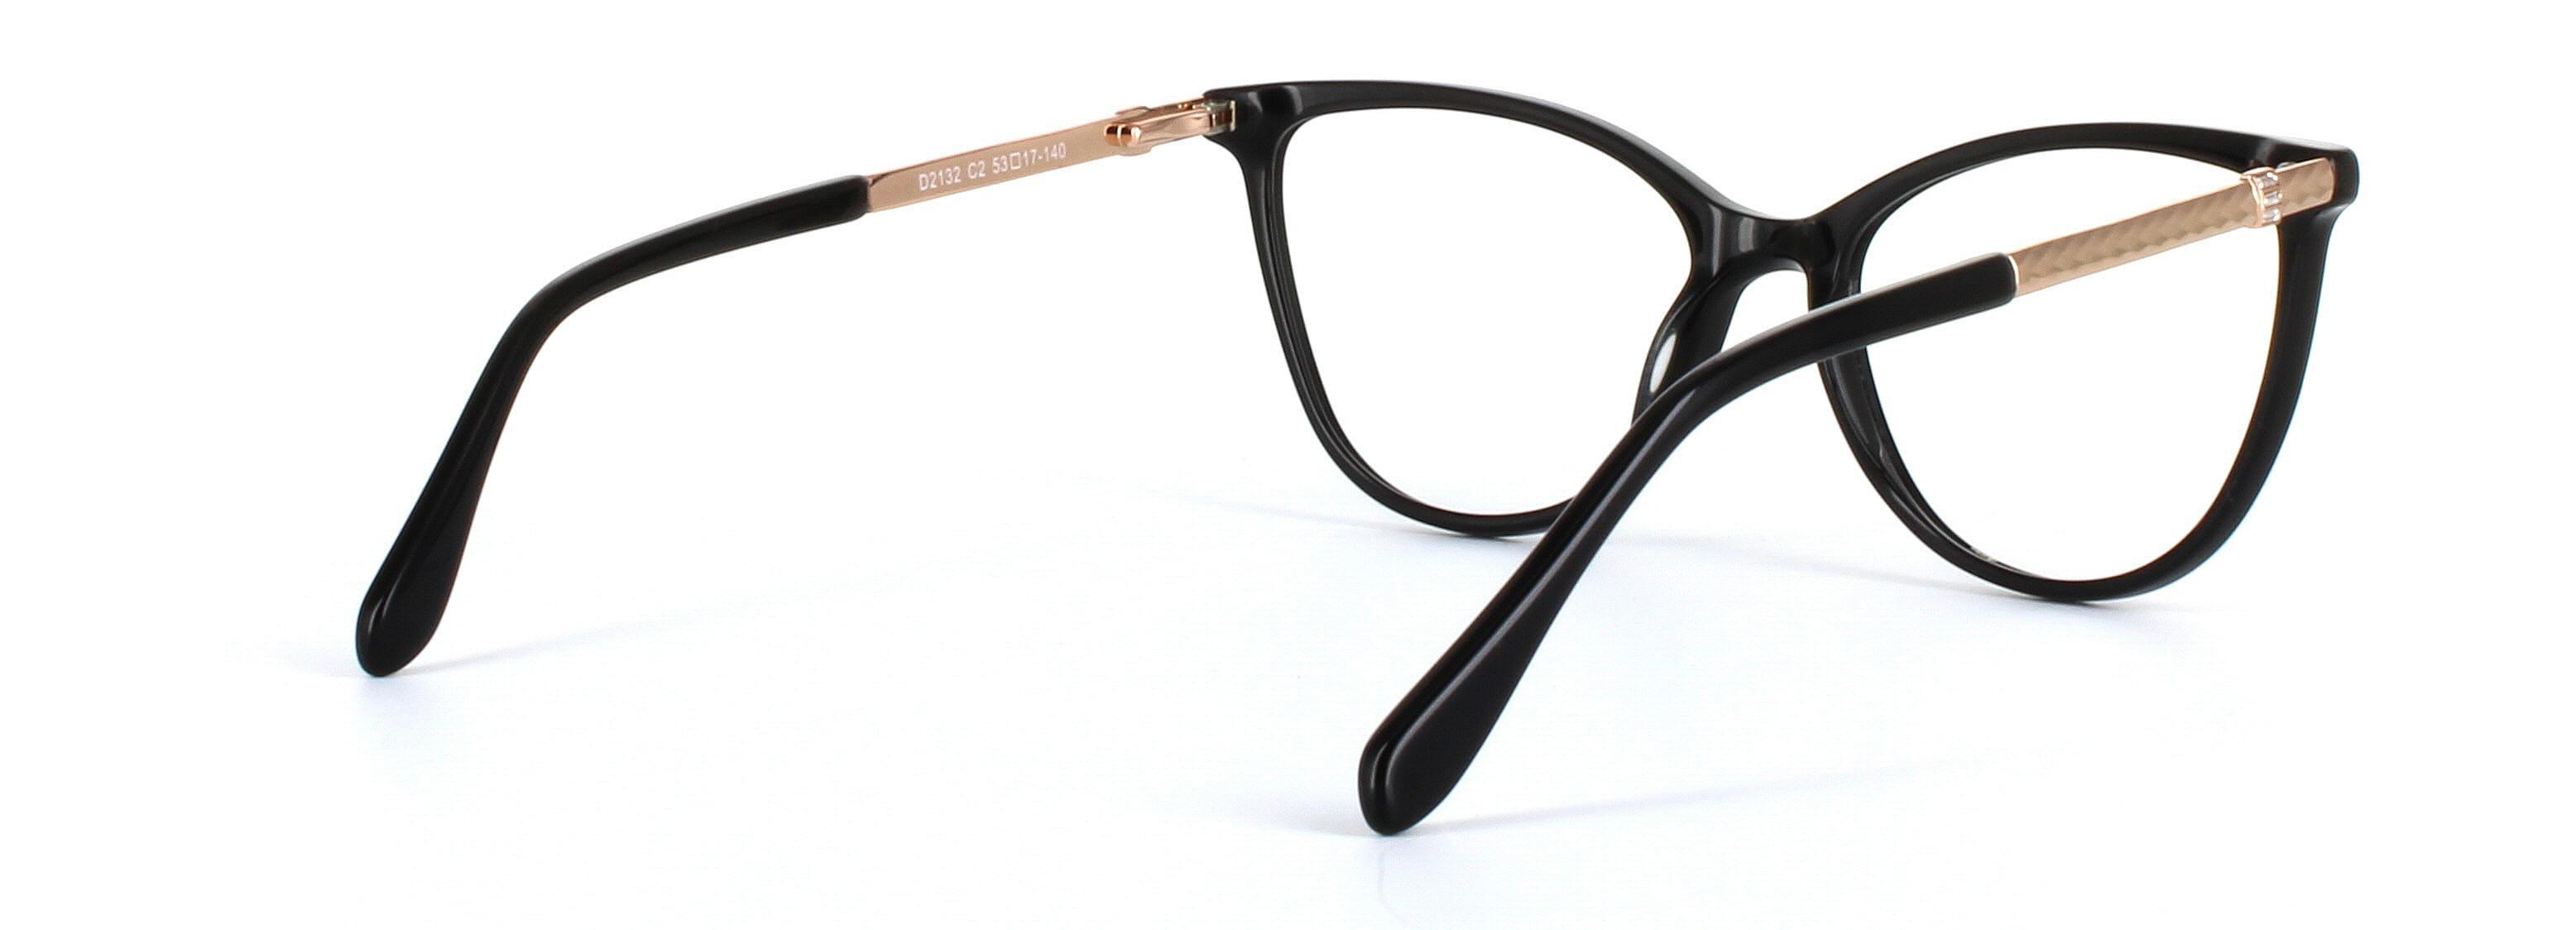 Callie Black Full Rim Cat Eye Acetate Glasses - Image View 4